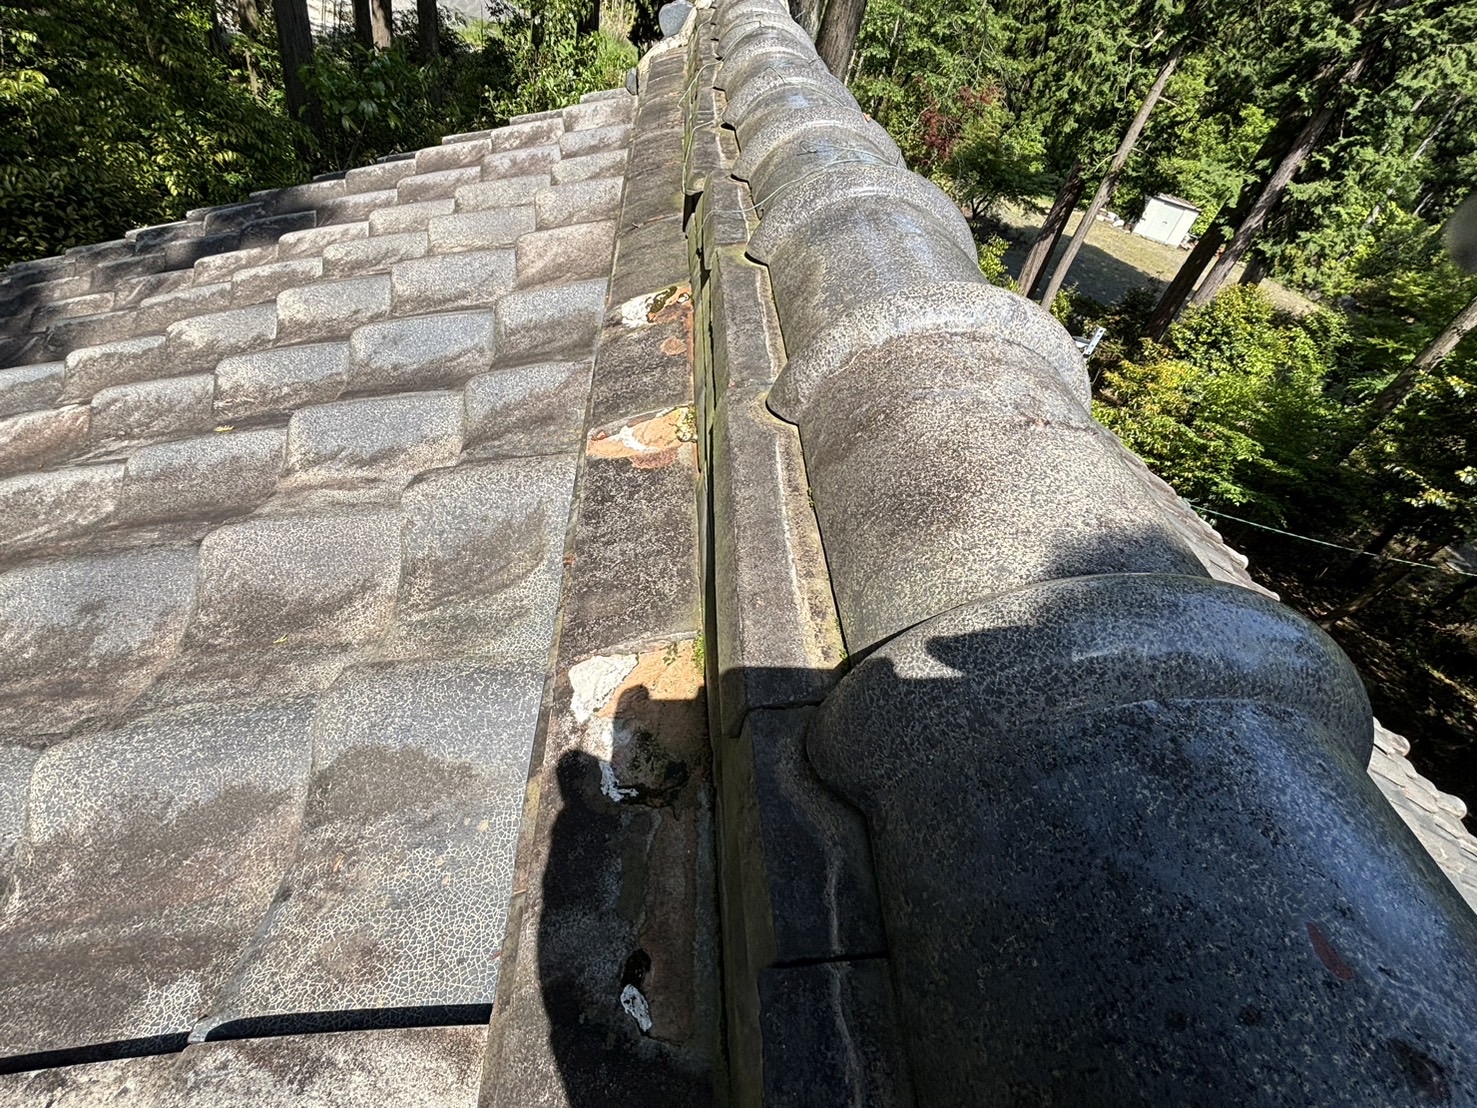 鈴鹿市の神社古い屋根瓦から雨漏れ、棟瓦が歪み熨斗瓦の劣化状態